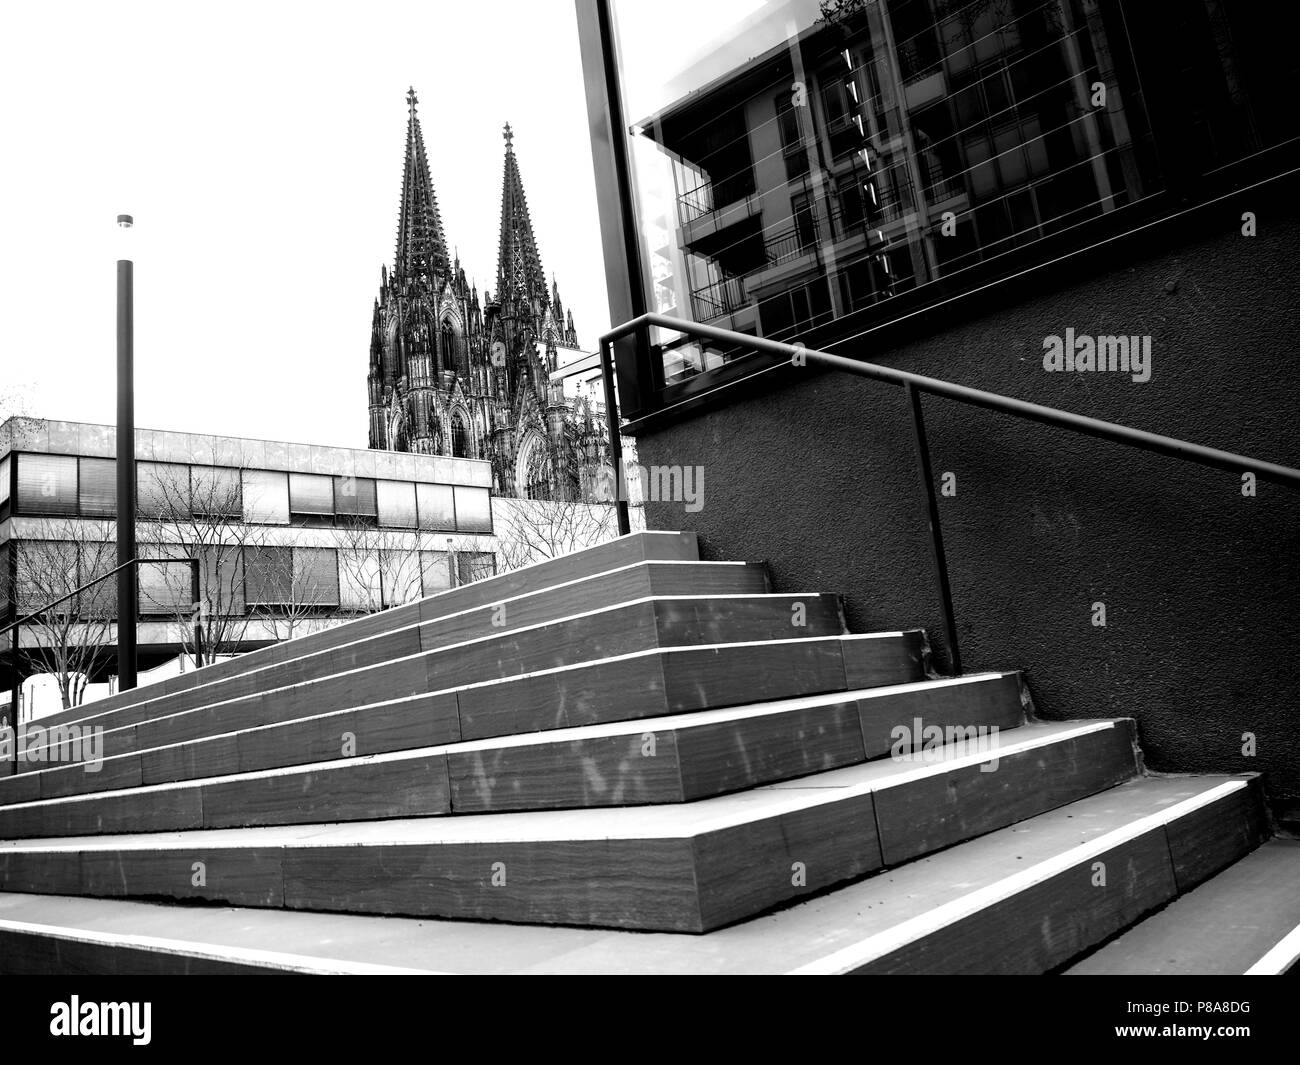 Kölner Dom im Hintergrund einer Treppe Schwarz und Weiß Foto Stockfoto